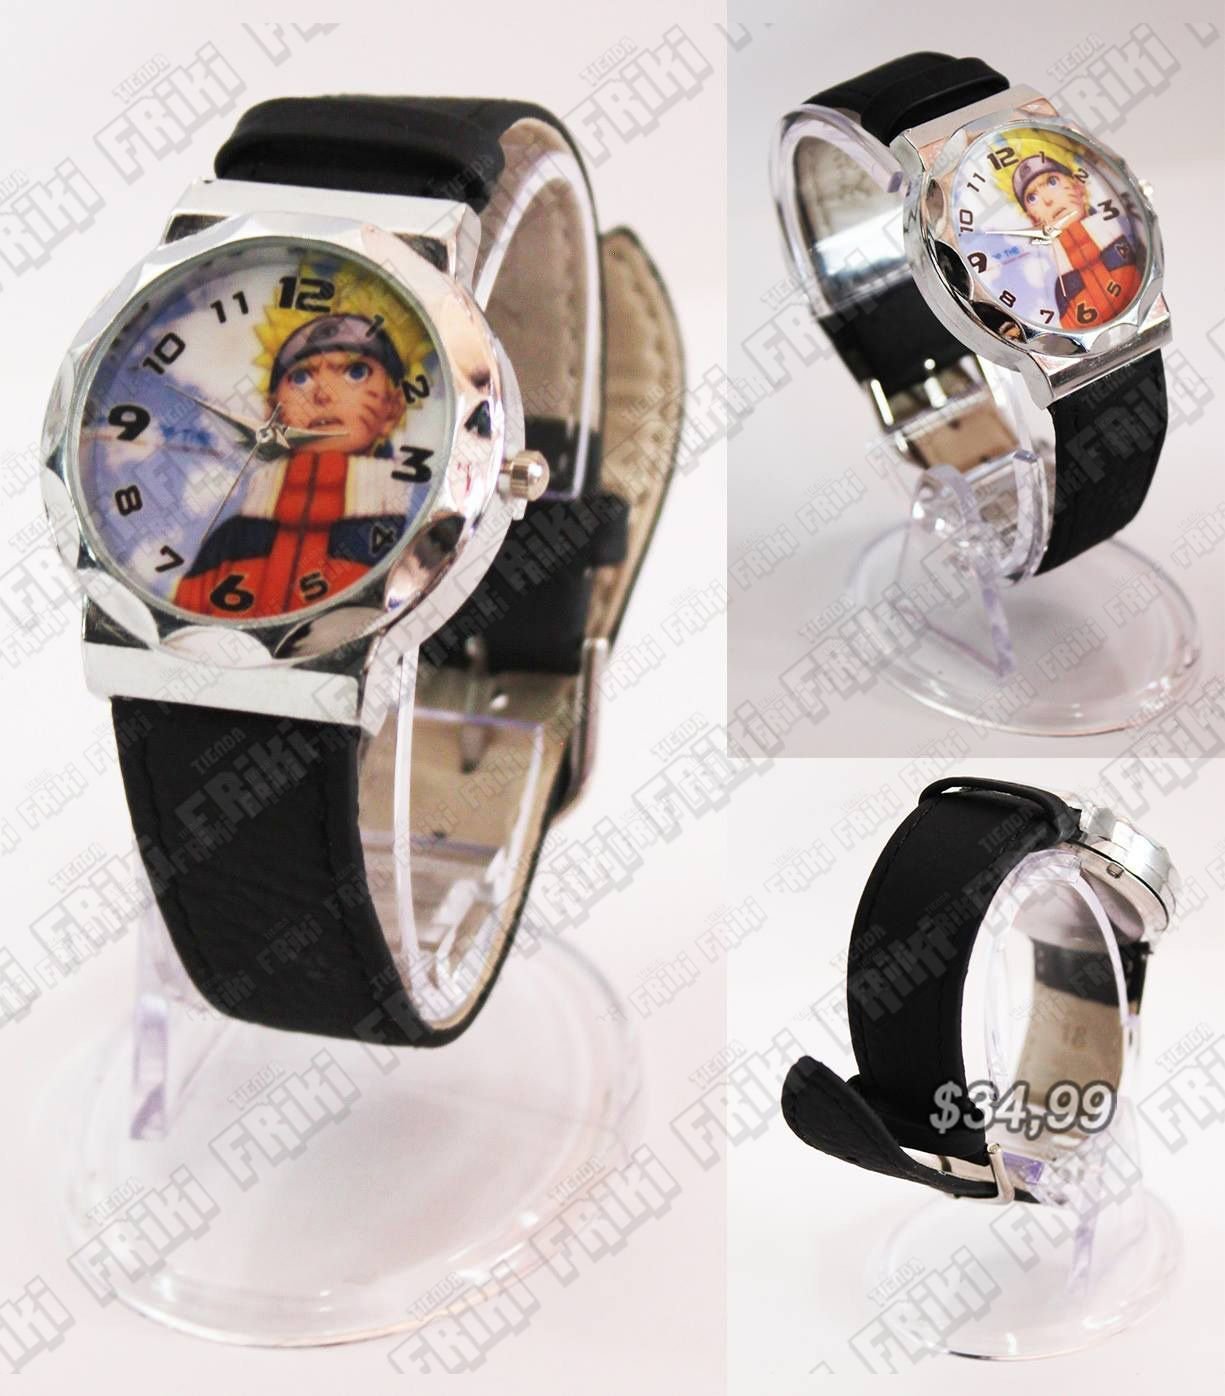 Reloj de pulsera Anime Naruto Ecuador Comprar Venden, Bonita Apariencia perfecto para fans de la serie, practica, Hermoso material de acero inoxidable Color negro y blanco Estado nuevo